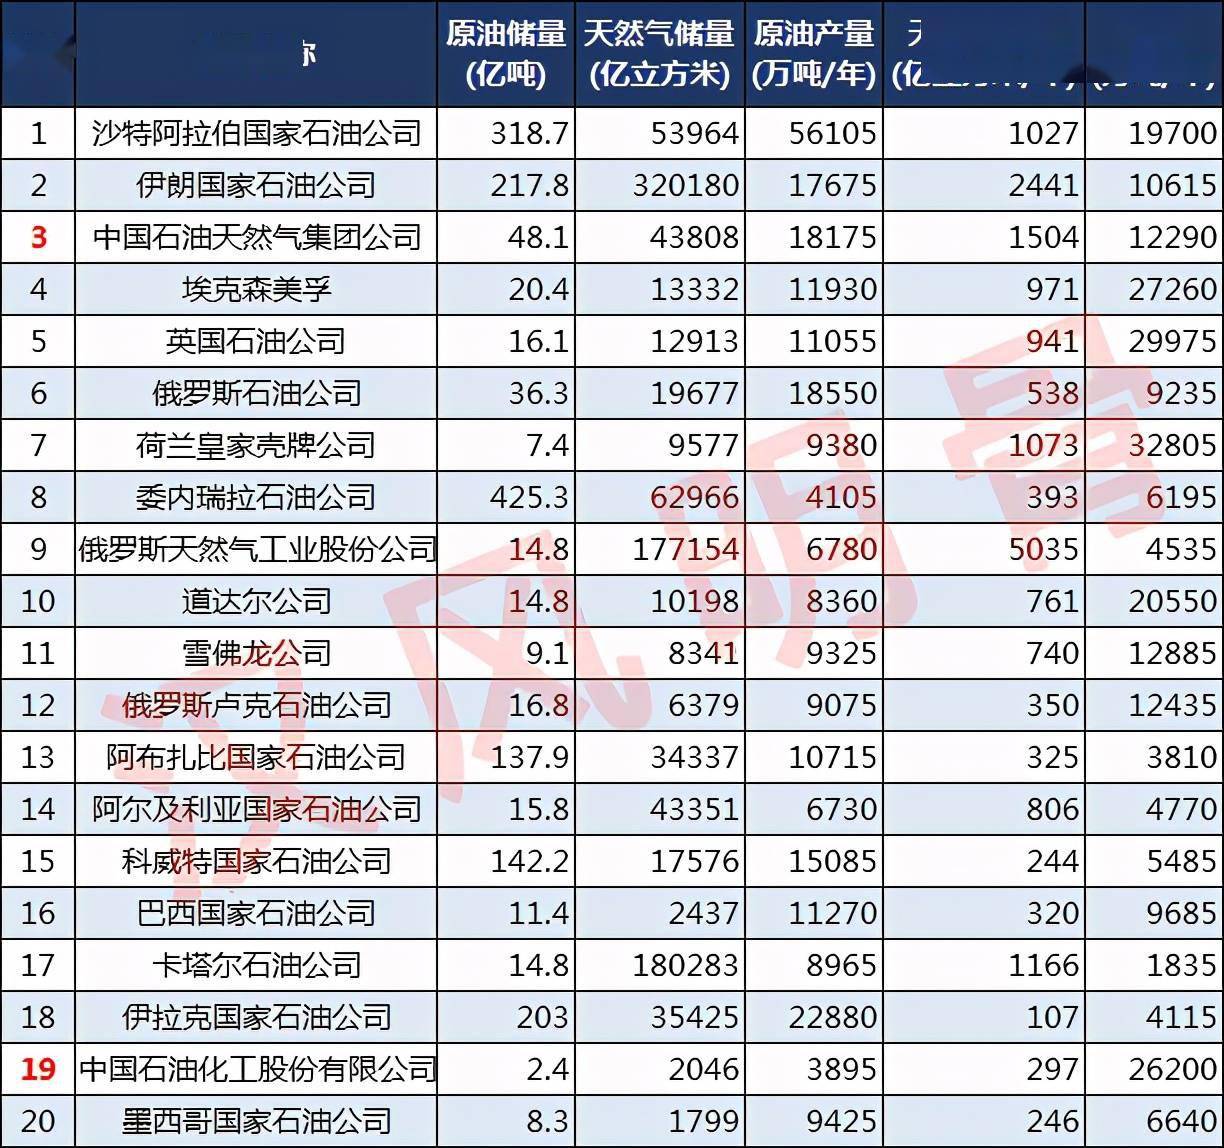 米乐体育官网app入口:最新发布:中国十大企业排名 中国十强企业排名名单盘点